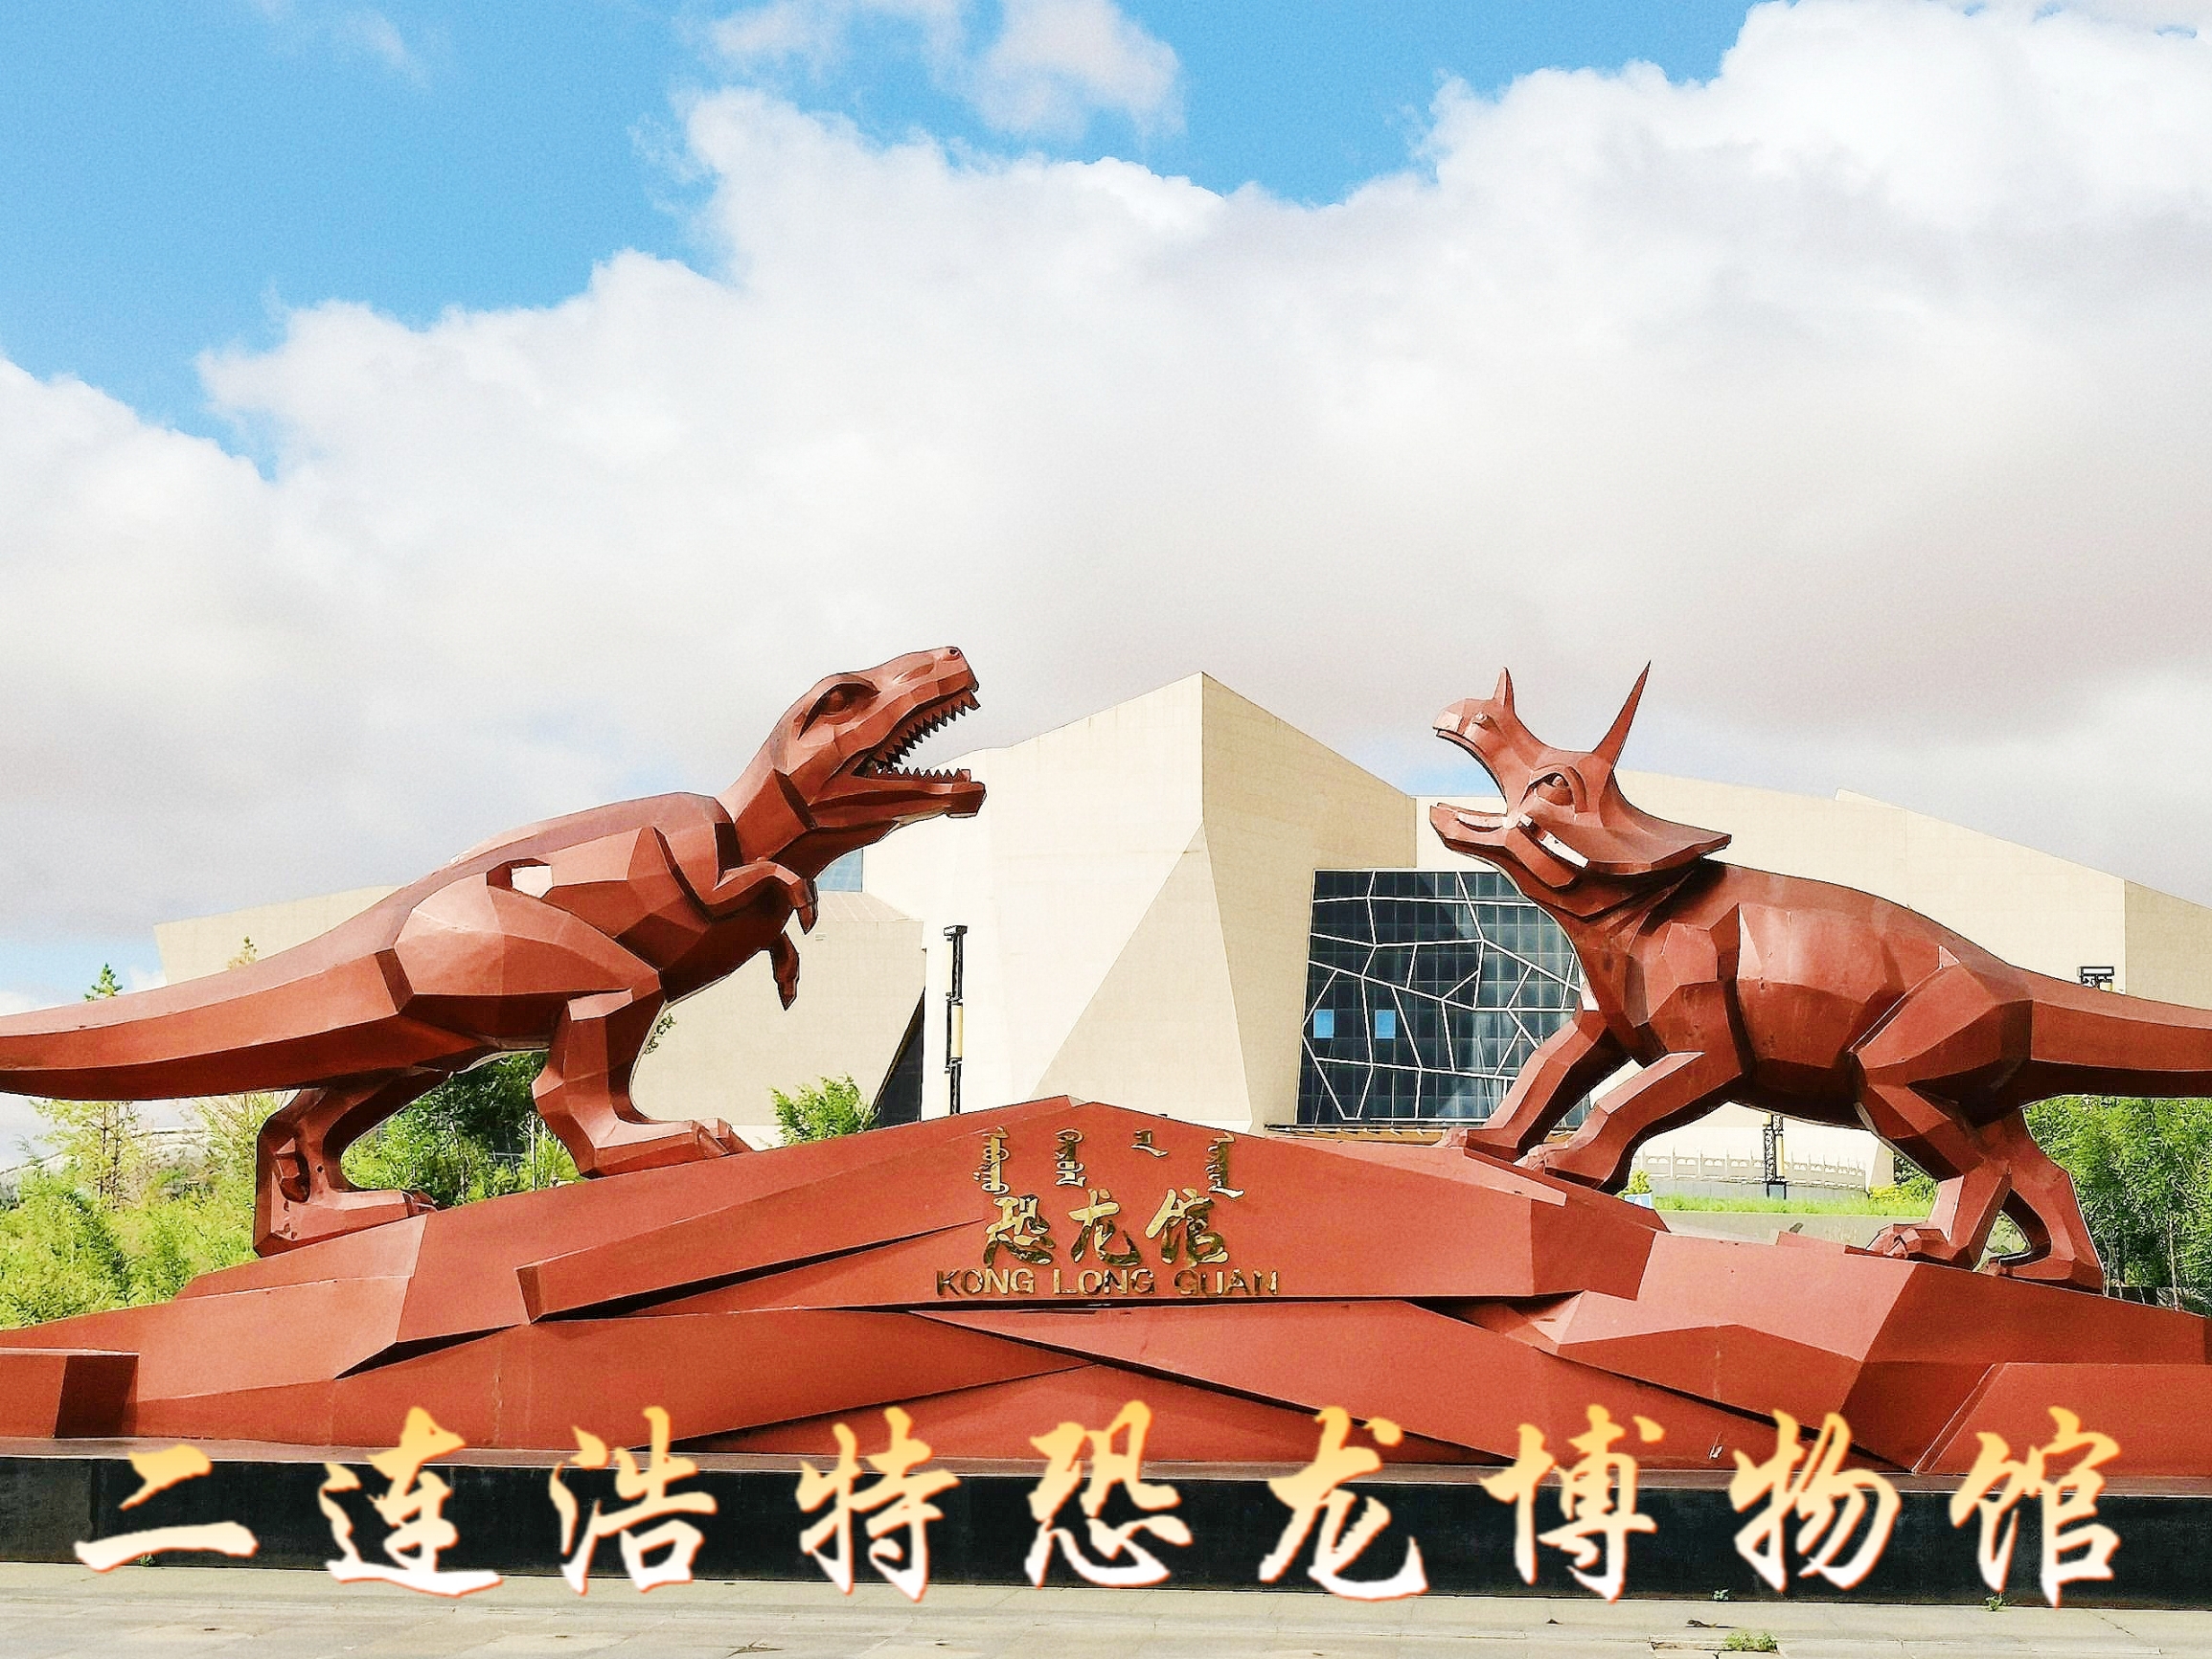 🌈 参观二连浩特市恐龙博物馆  二连浩特市恐龙博物馆，位于内蒙古自治区锡林郭勒盟二连浩特市西环路，占